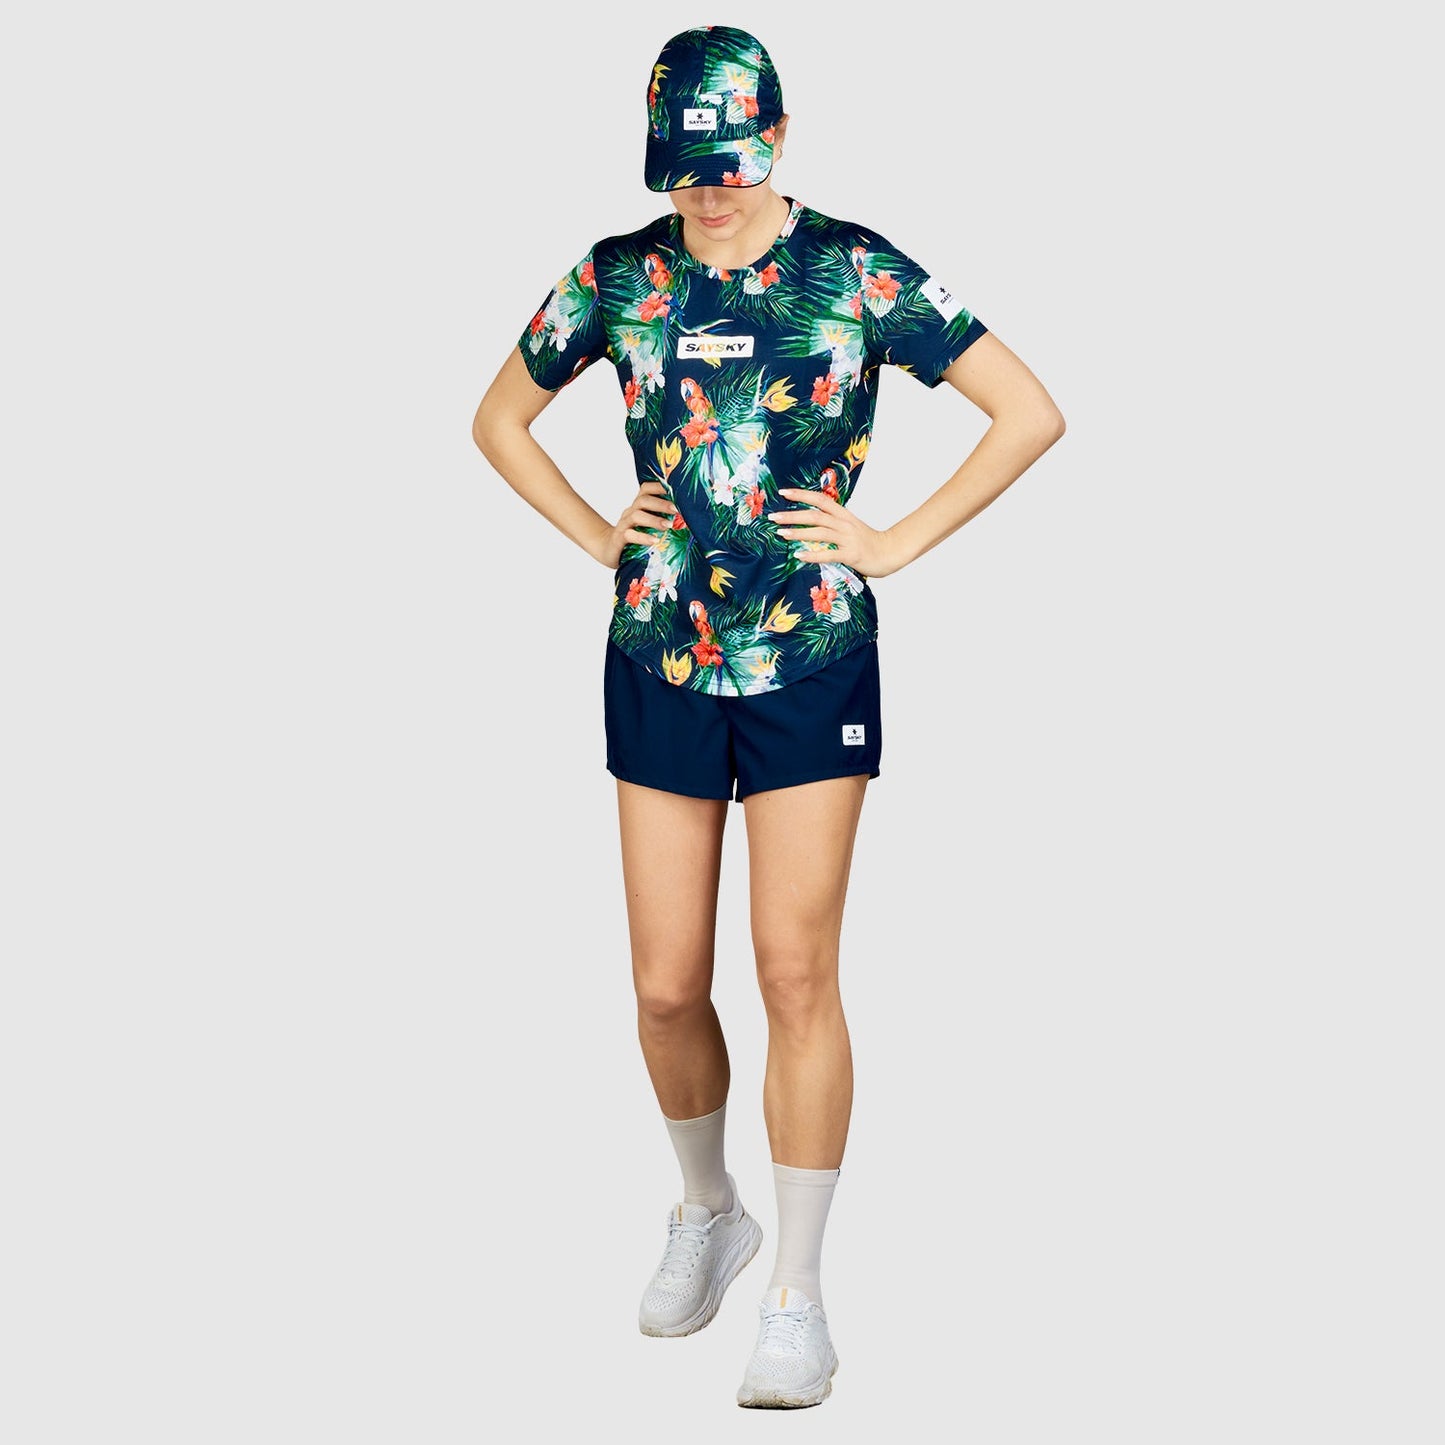 ランニングTシャツ HMRSS15 Floral Combat Tee - Paradise Floral [ユニセックス]